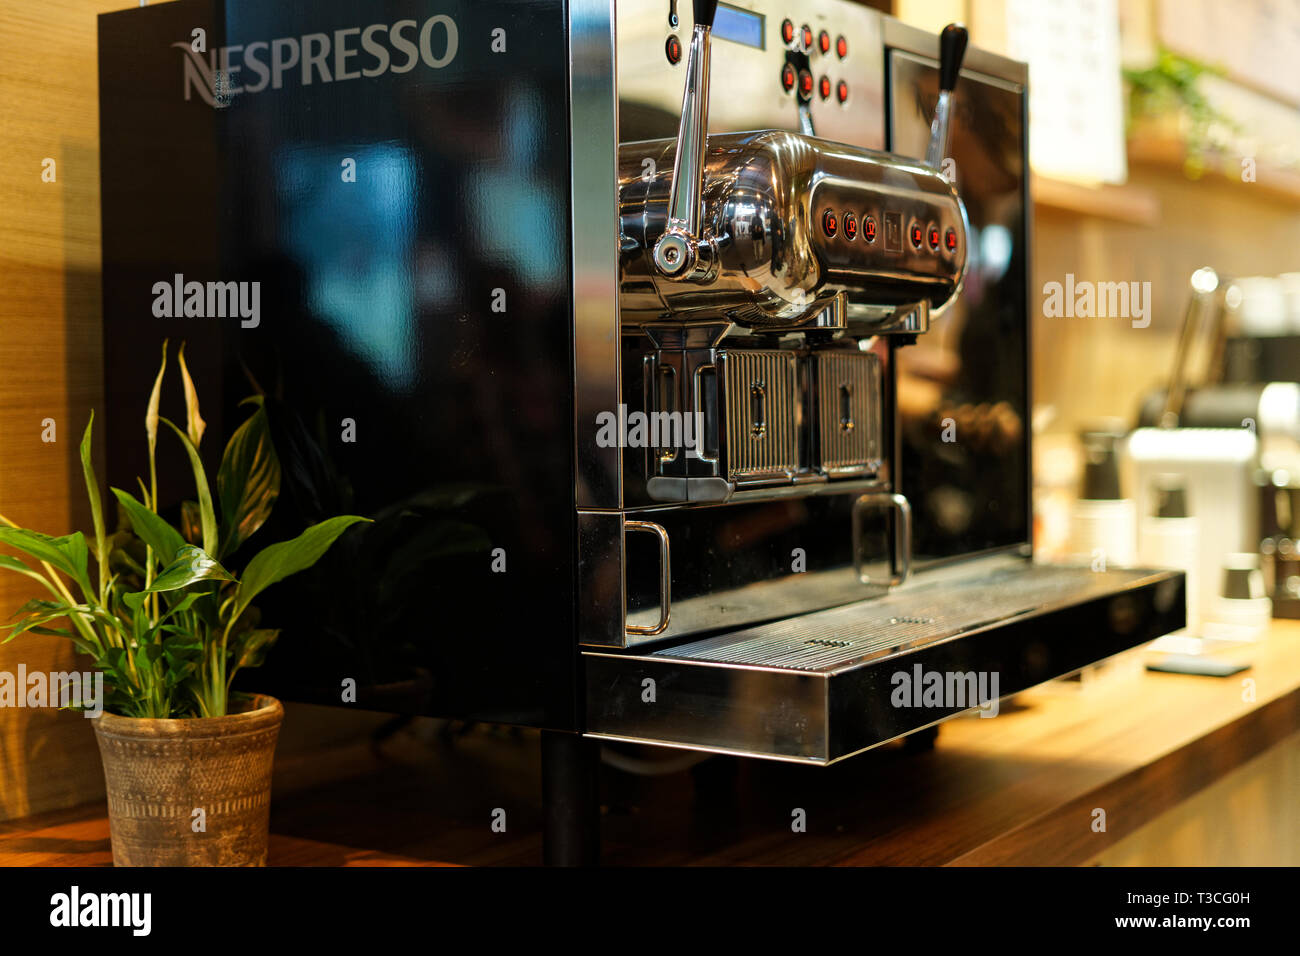 Nespresso profesional: cafeteras comerciales y café